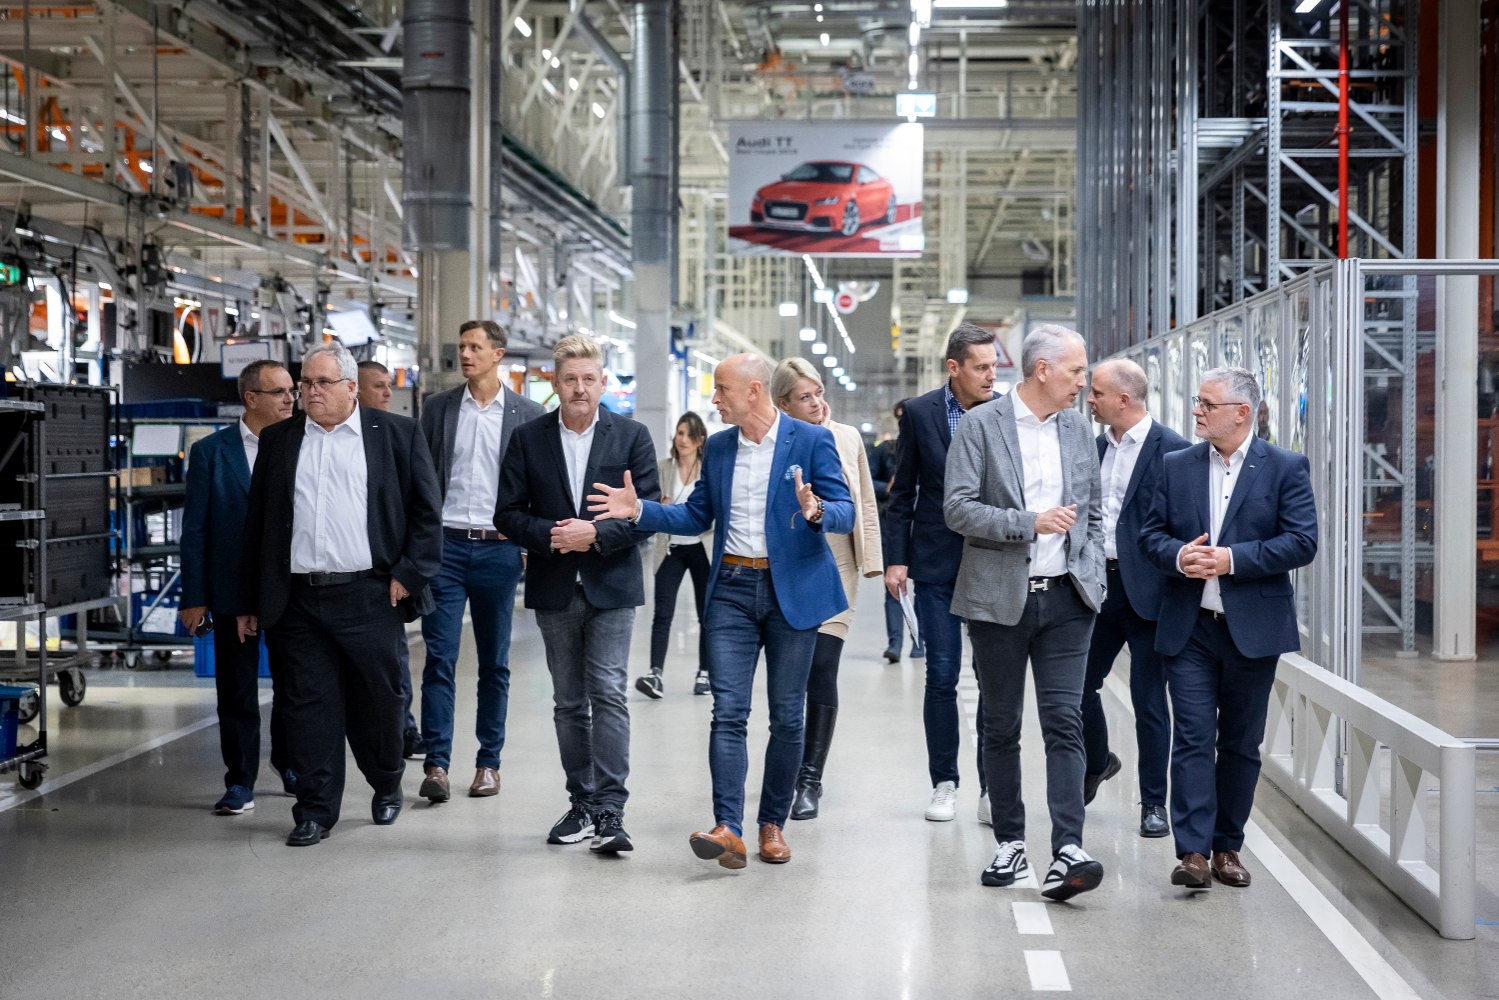 CUPRA dévoile la CUPRA Terramar aux employés d'Audi Hongrie, chargés de sa production